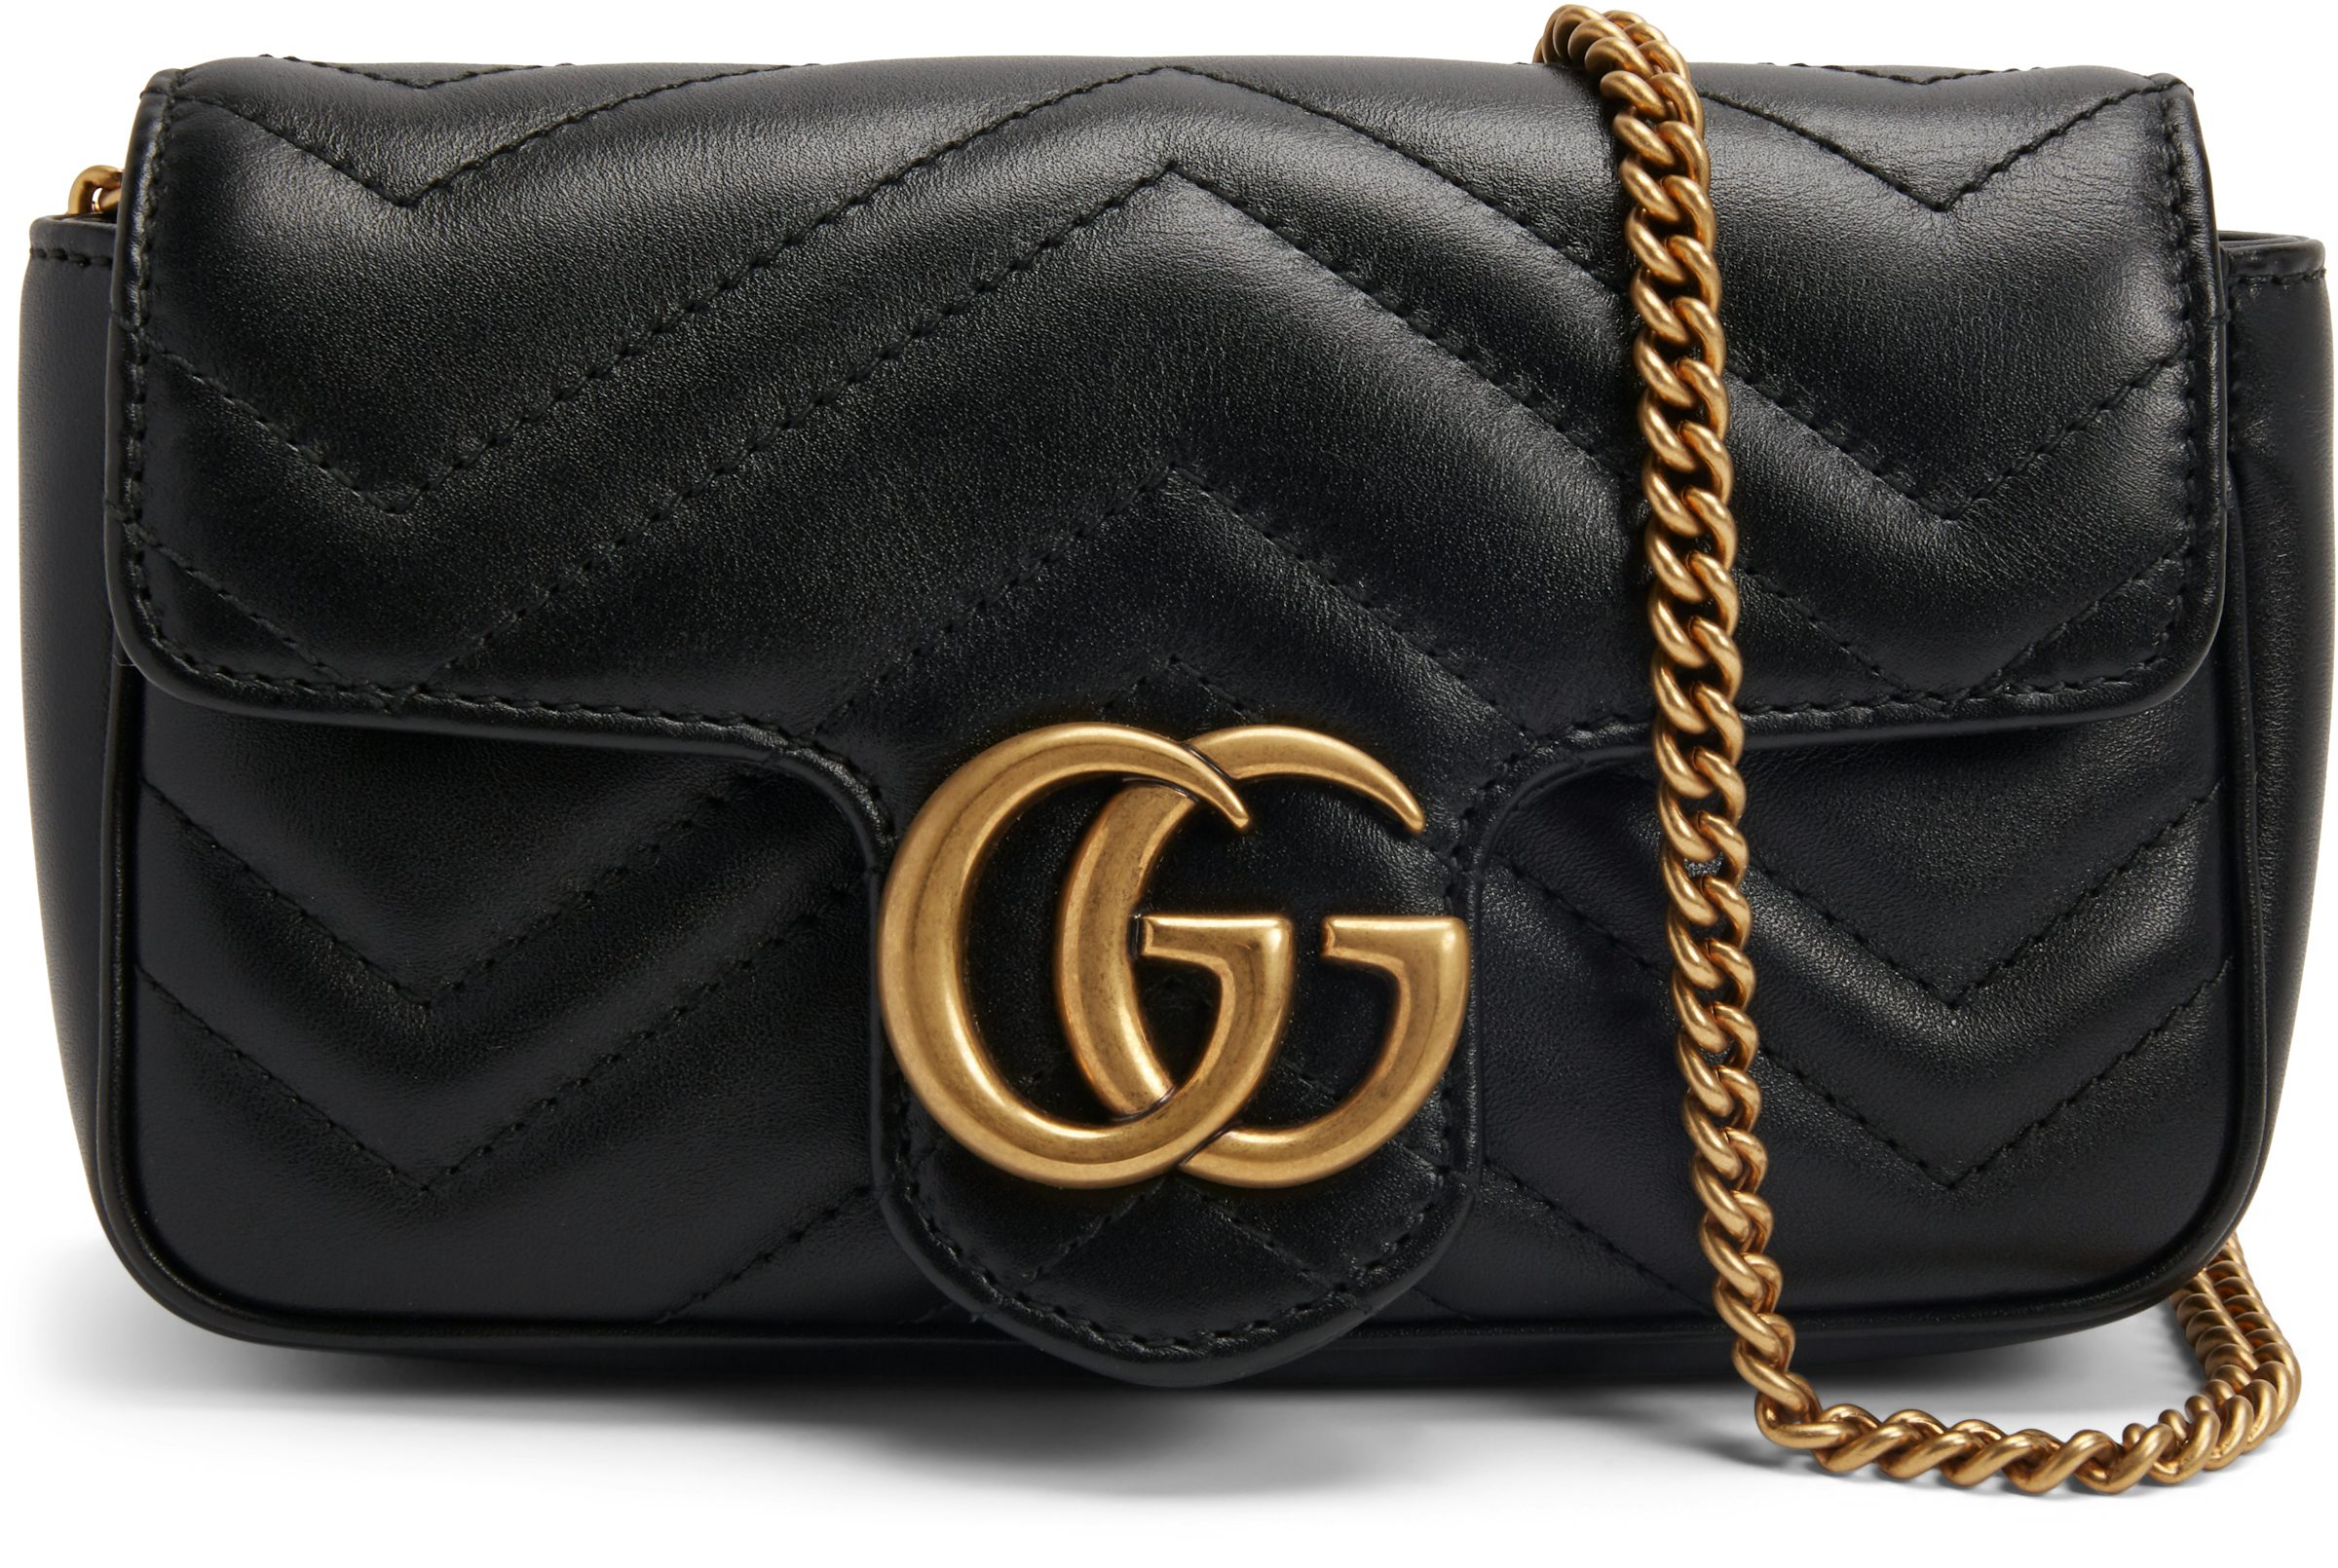 Gucci Super Mini Marmont Bag